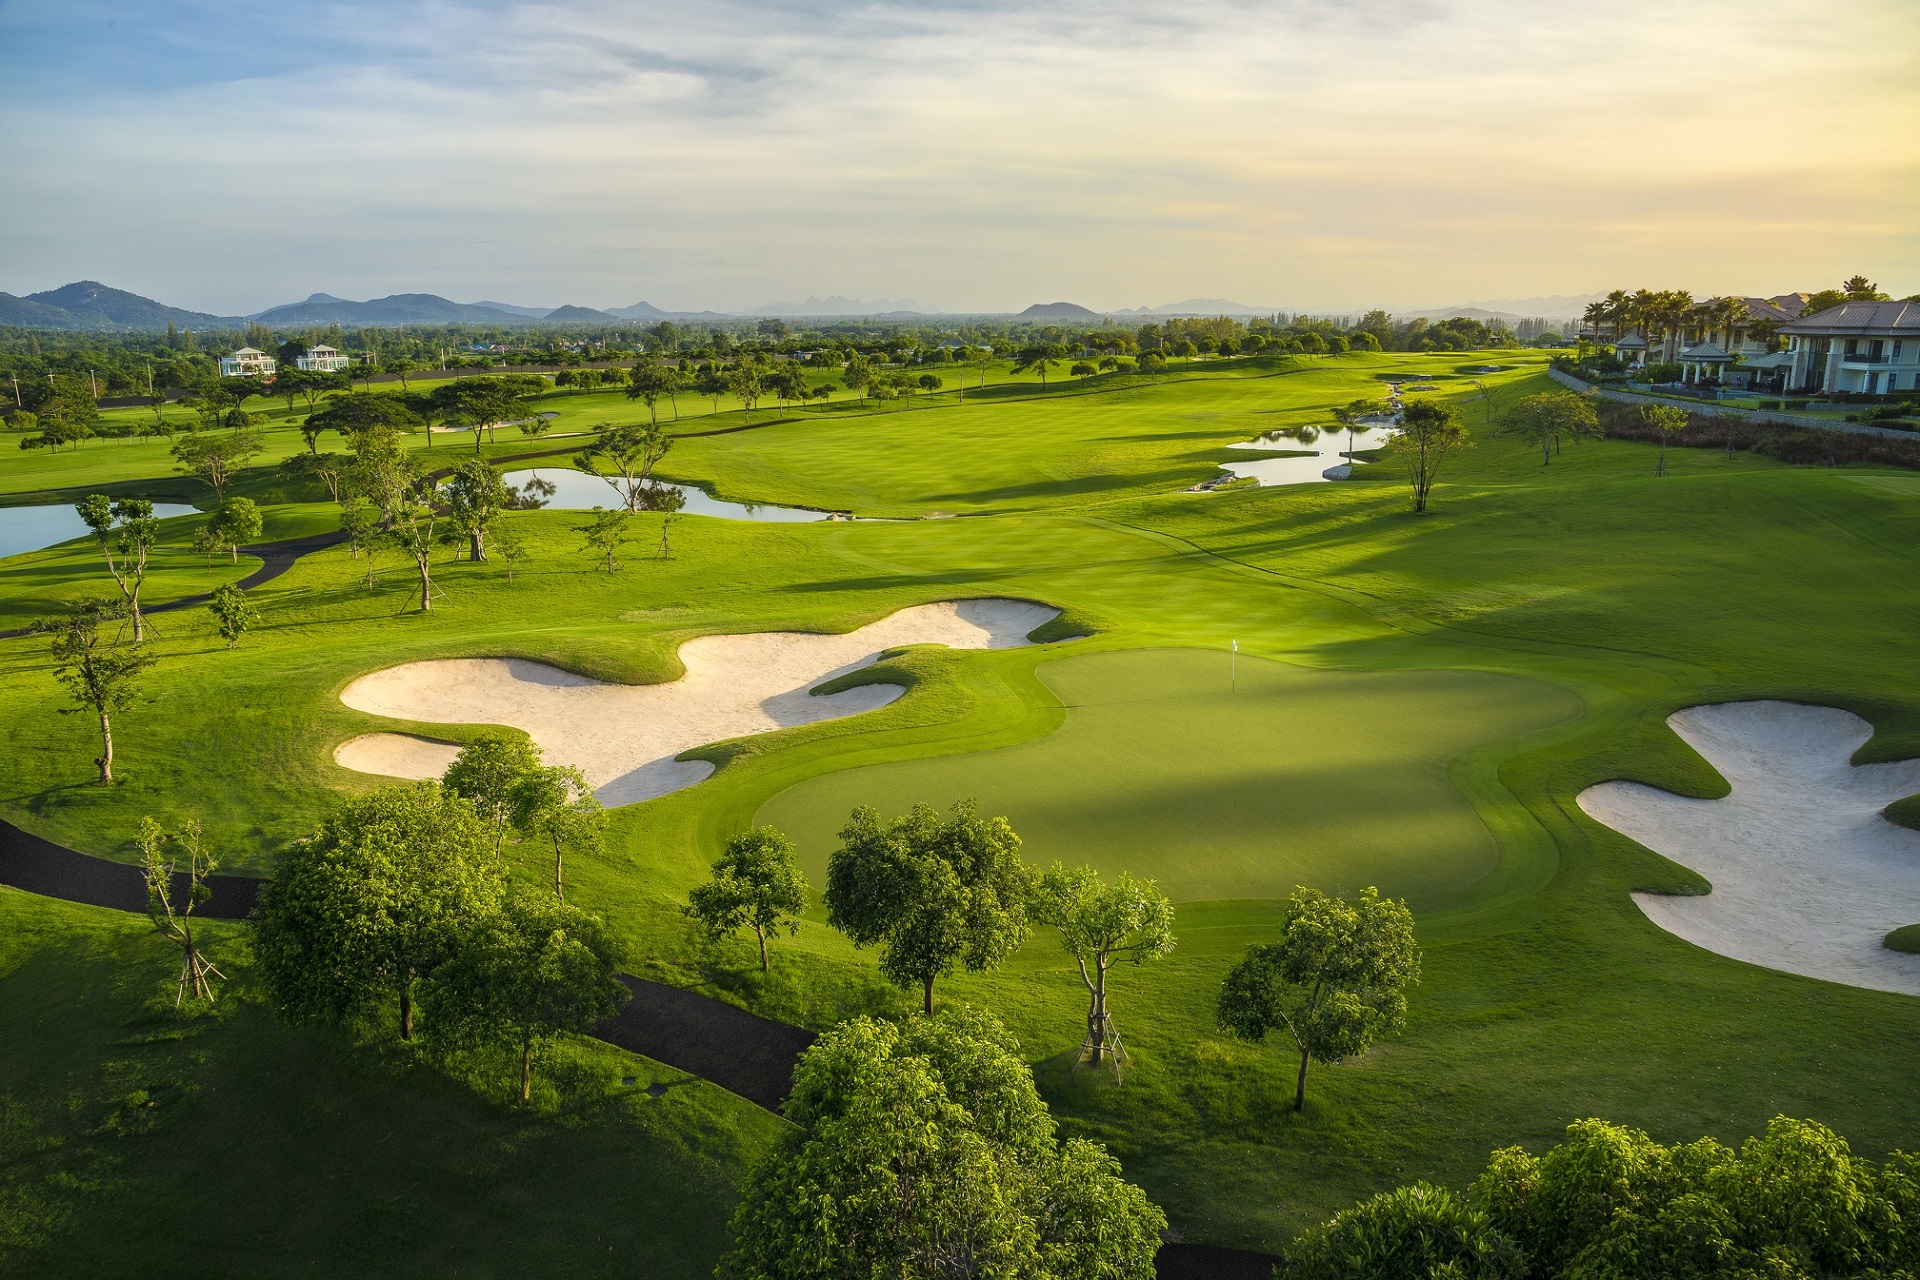 Overhead view af det grønne landskab og golfbaner på Black Mountain Golf Club, Hua Hin, Thailand. Billedet viser flere fairways omgivet af